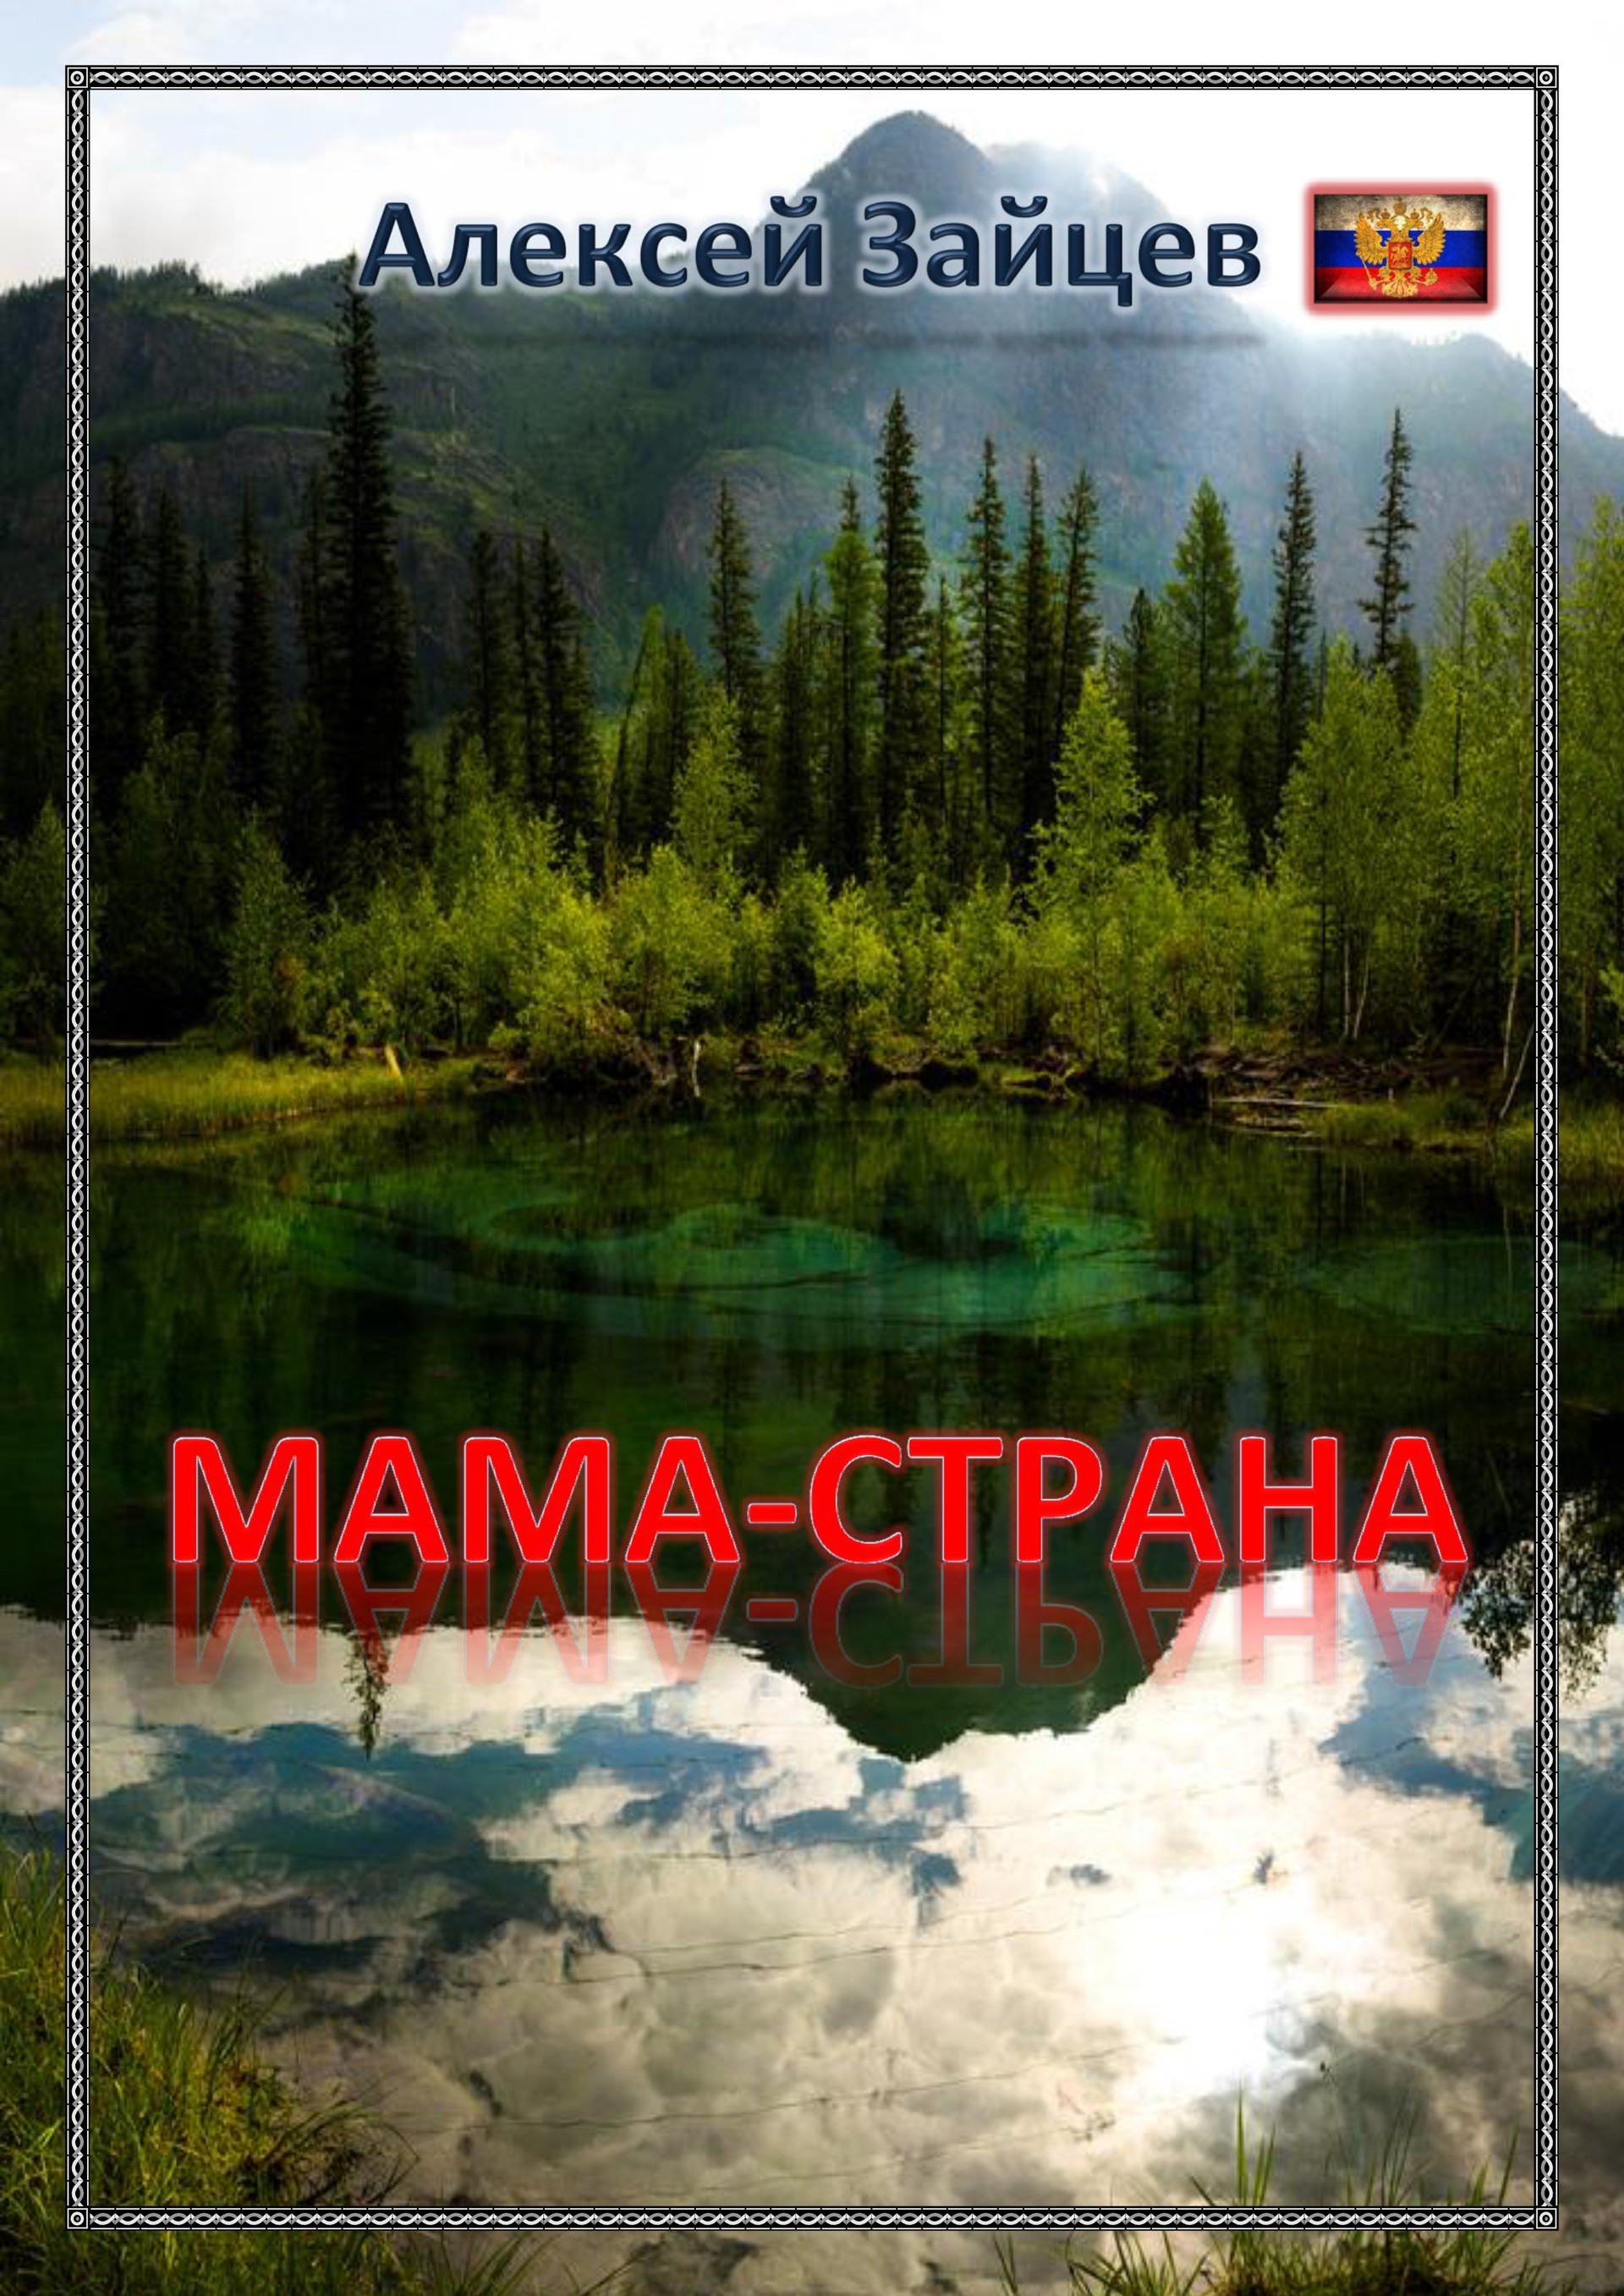 Читать книгу Алексея Зайцева "Мама-Страна"